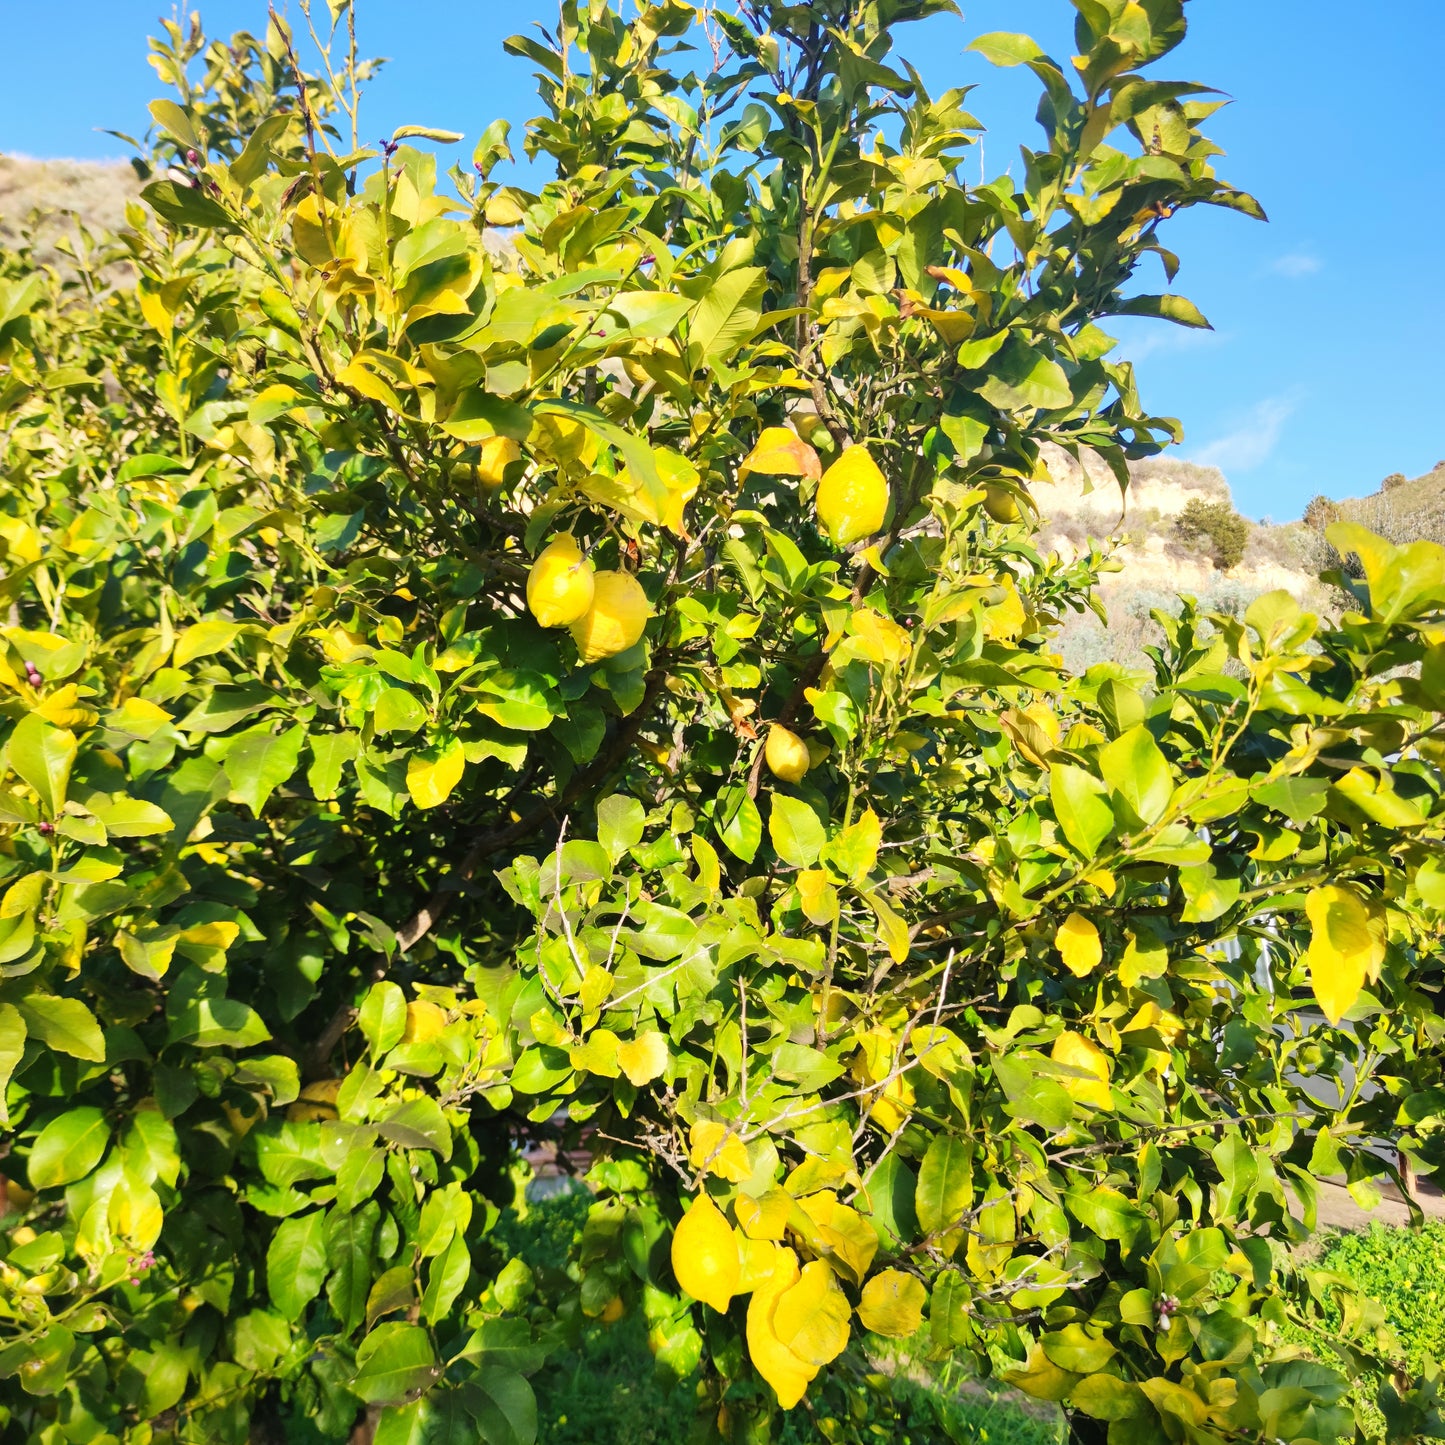 Citrons sardes non traités cultivés naturellement, campagne de Sennori (SS)